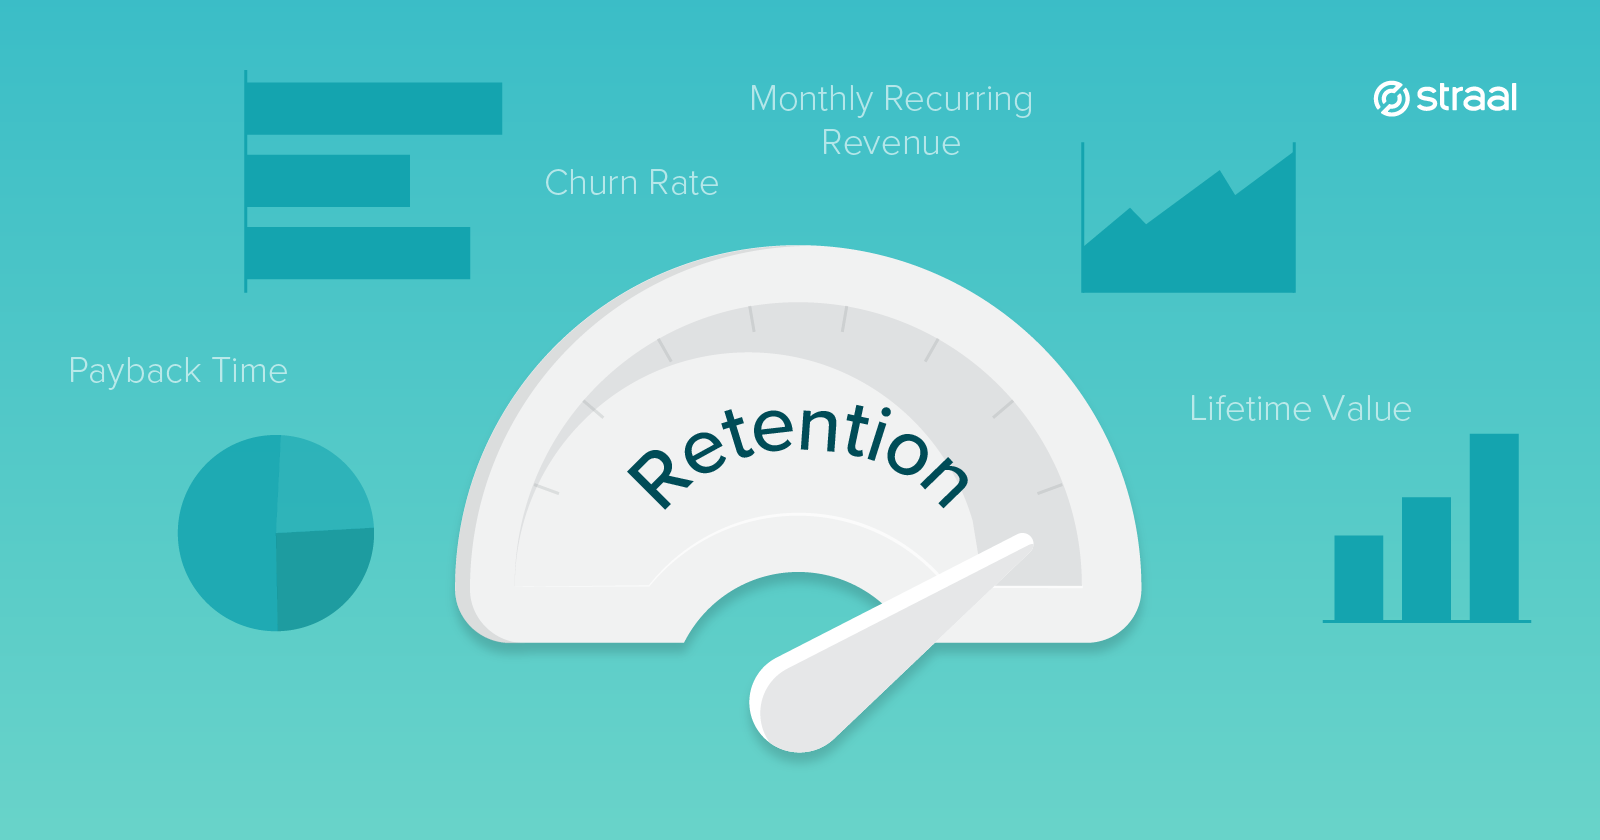 Retention metrics cover